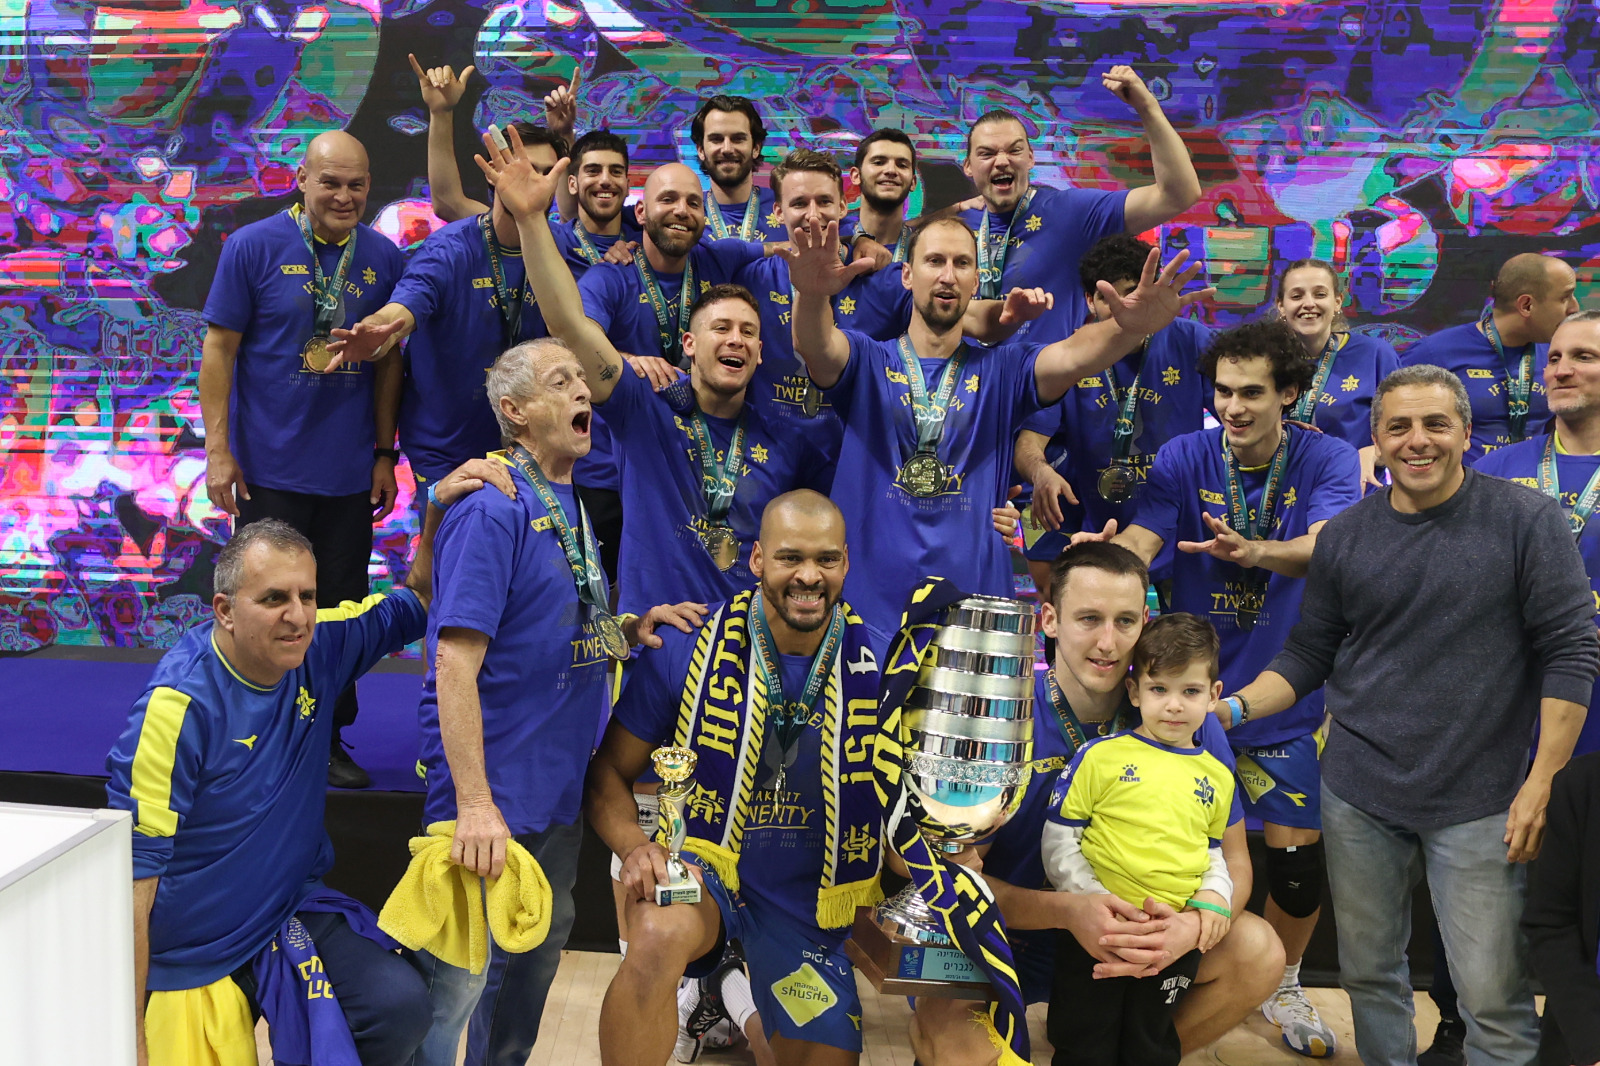 מכבי תל אביב מחזיקת גביע המדינה לגברים בכדורעף (צילום: לילך וייס רוזנברג)